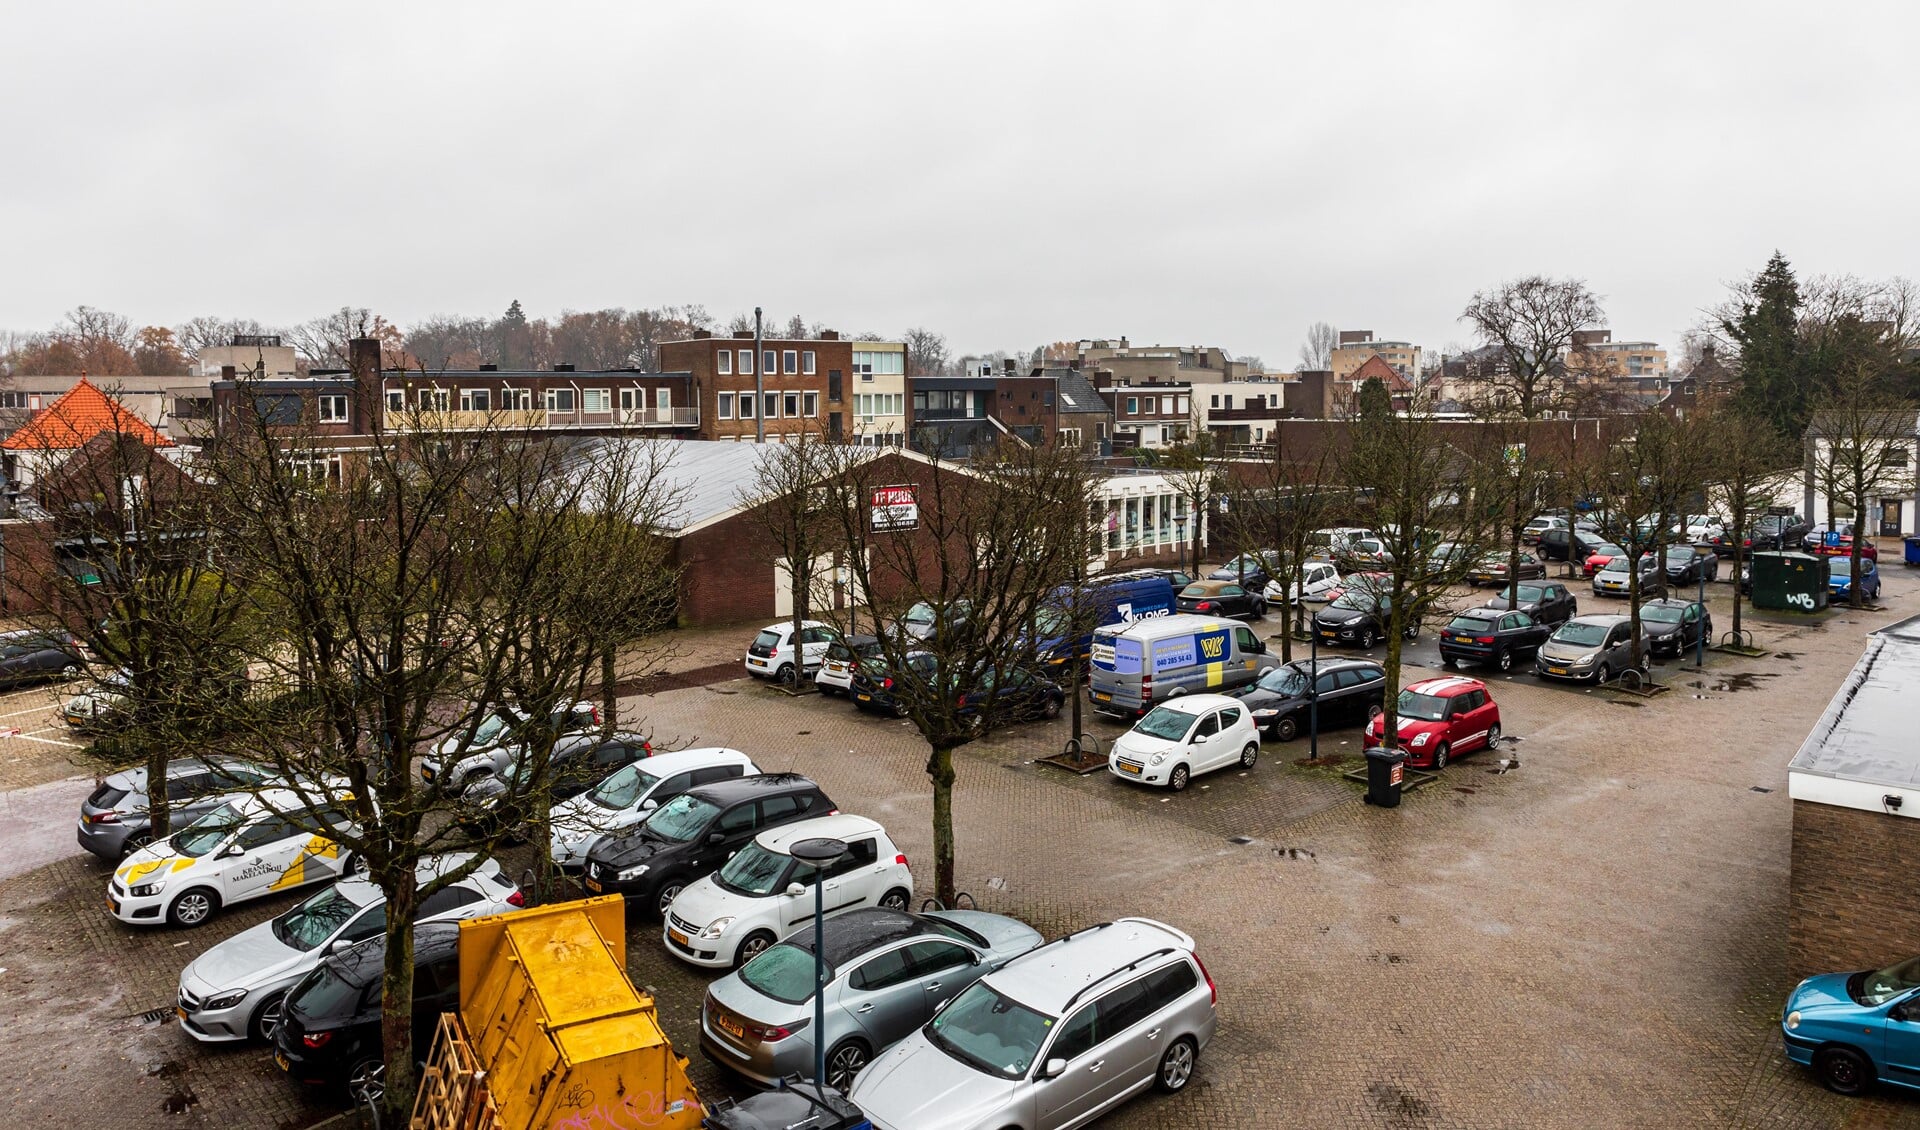 Bezorgershof in Geldrop. Woningen en een parkeerkelder zien ondernemers niet zitten. (Foto: Micle de Greef)